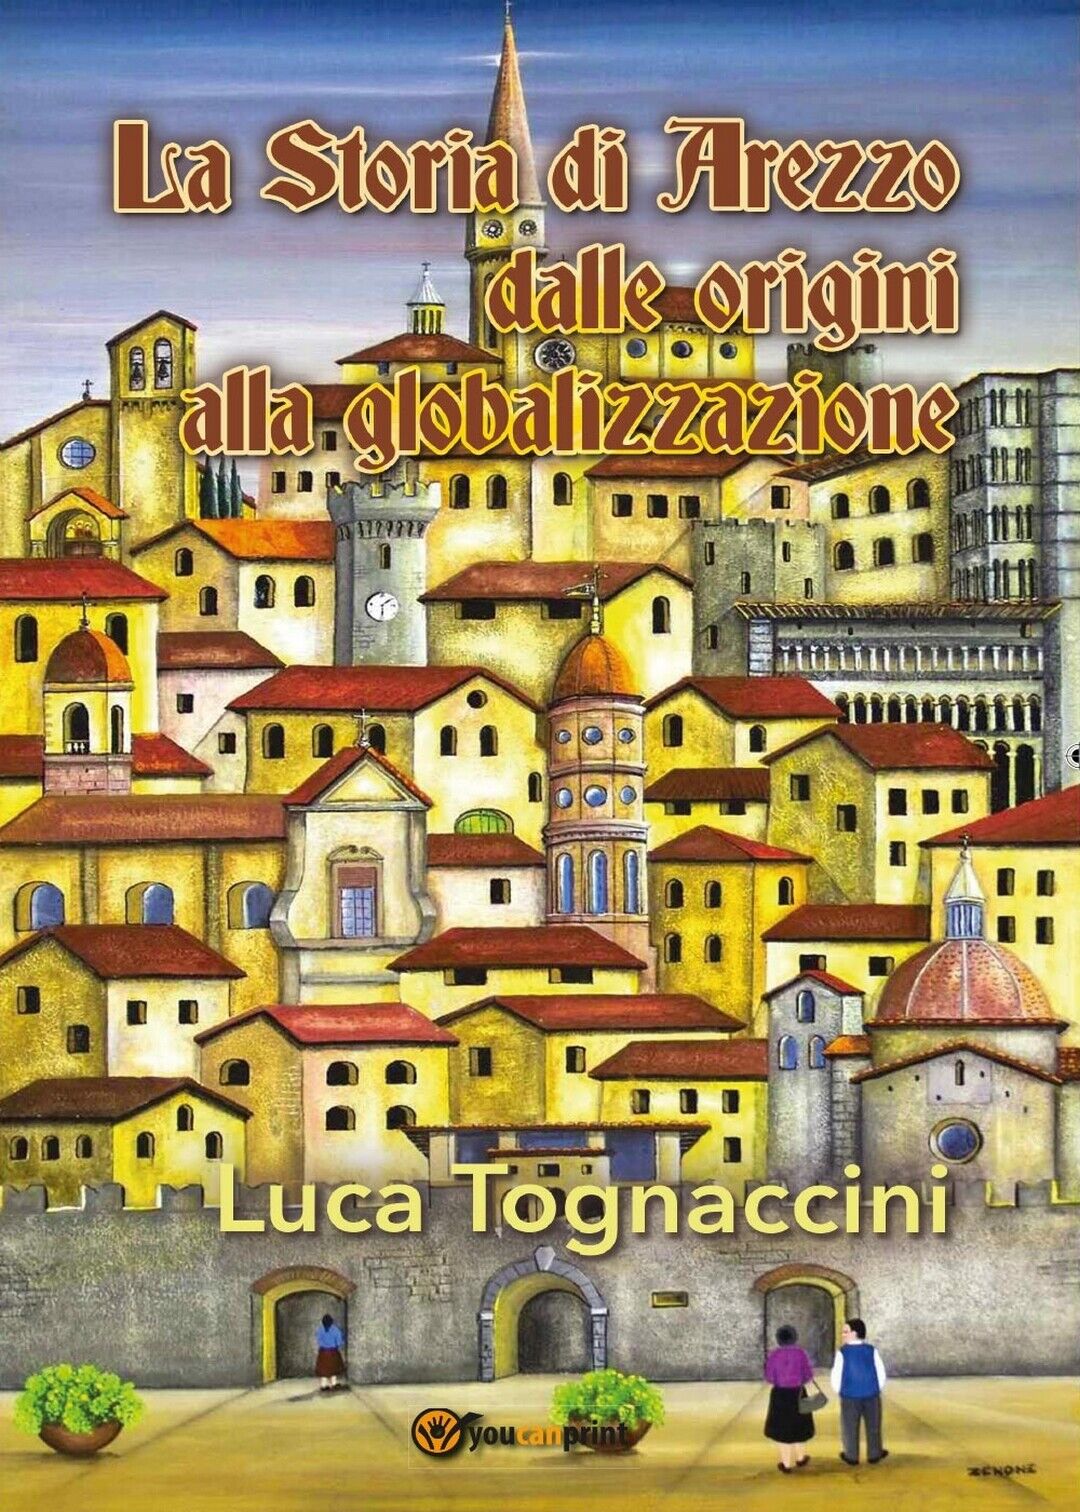 La Storia di Arezzo dalle origini alla globalizzazione, Luca Tognaccini,  2016